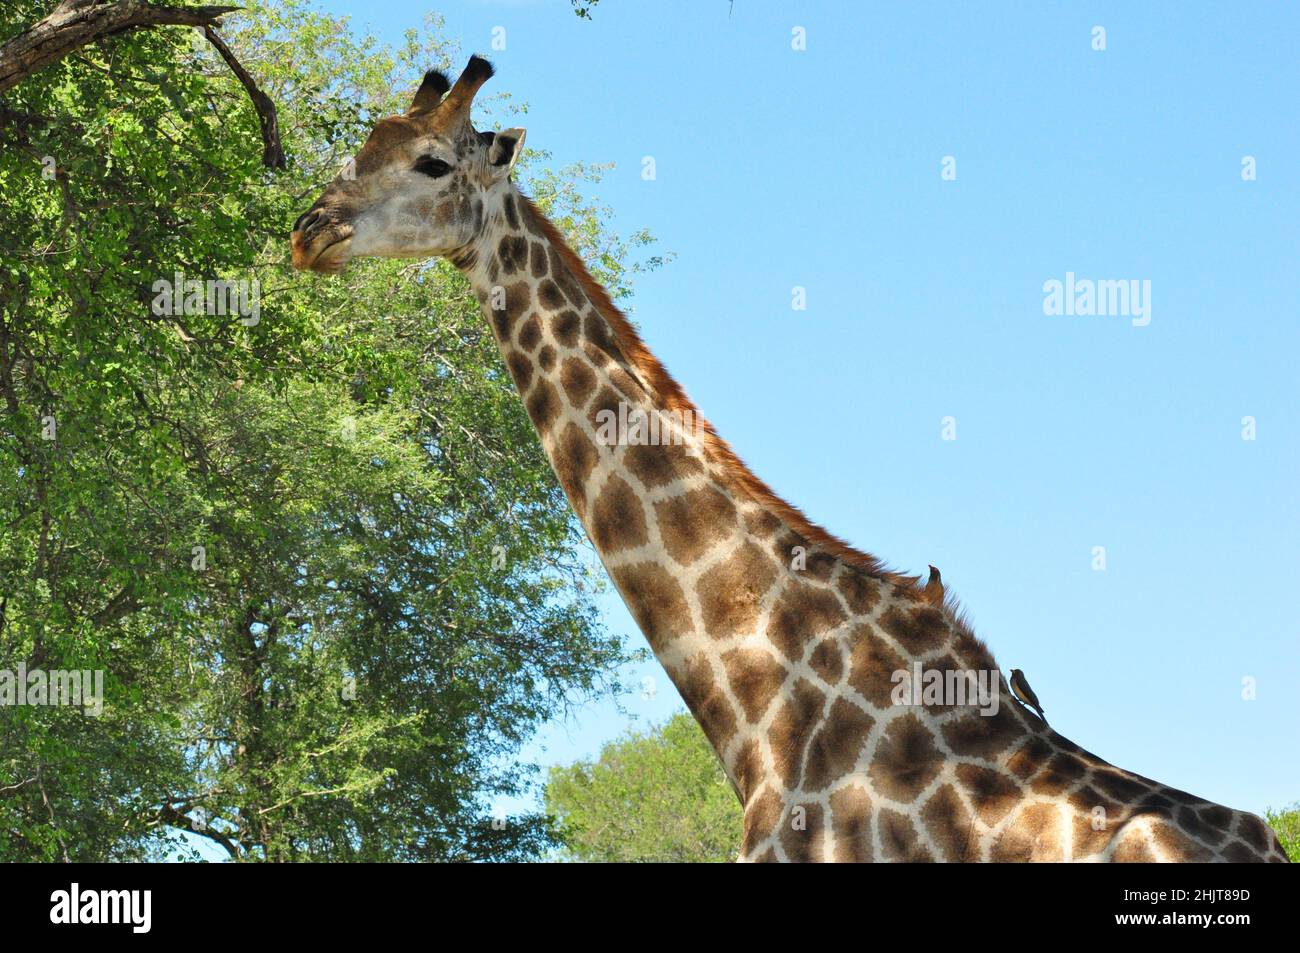 Girafe se nourrissant de l'épine, Afrique du Sud, Giraffa camelopardalis Banque D'Images